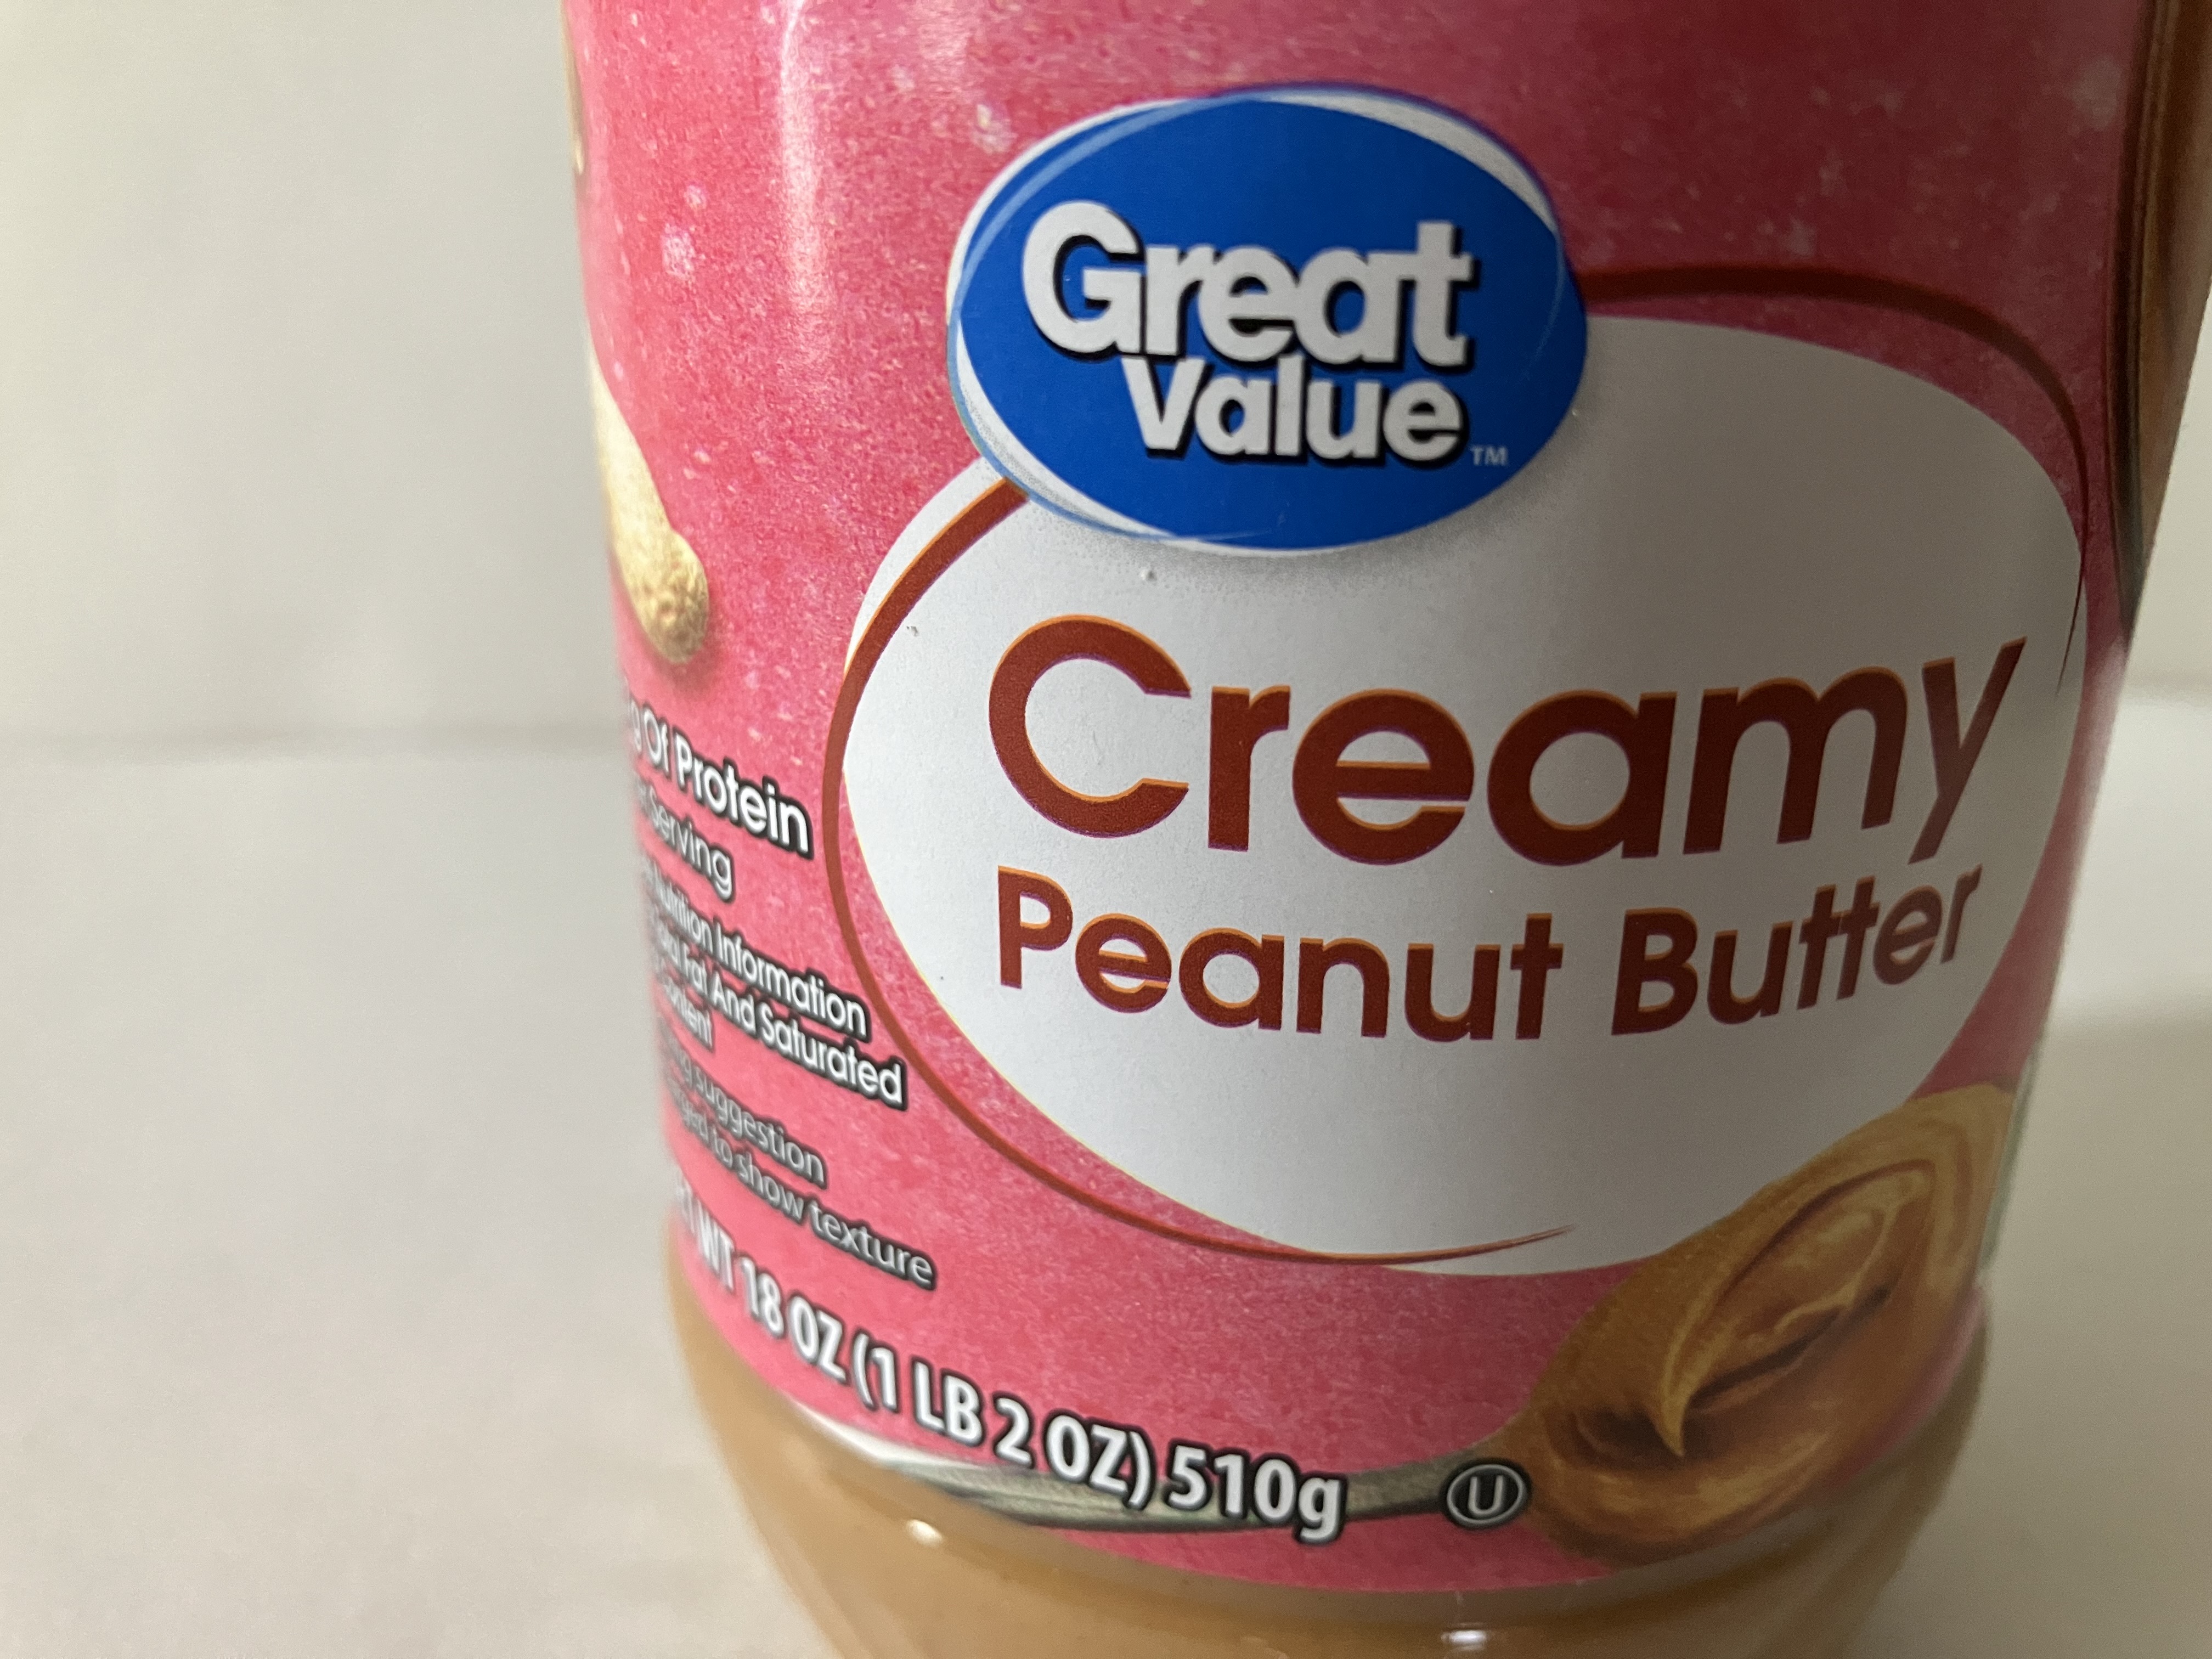 Great Value Creamy Peanut Butter, 18 oz Jar 